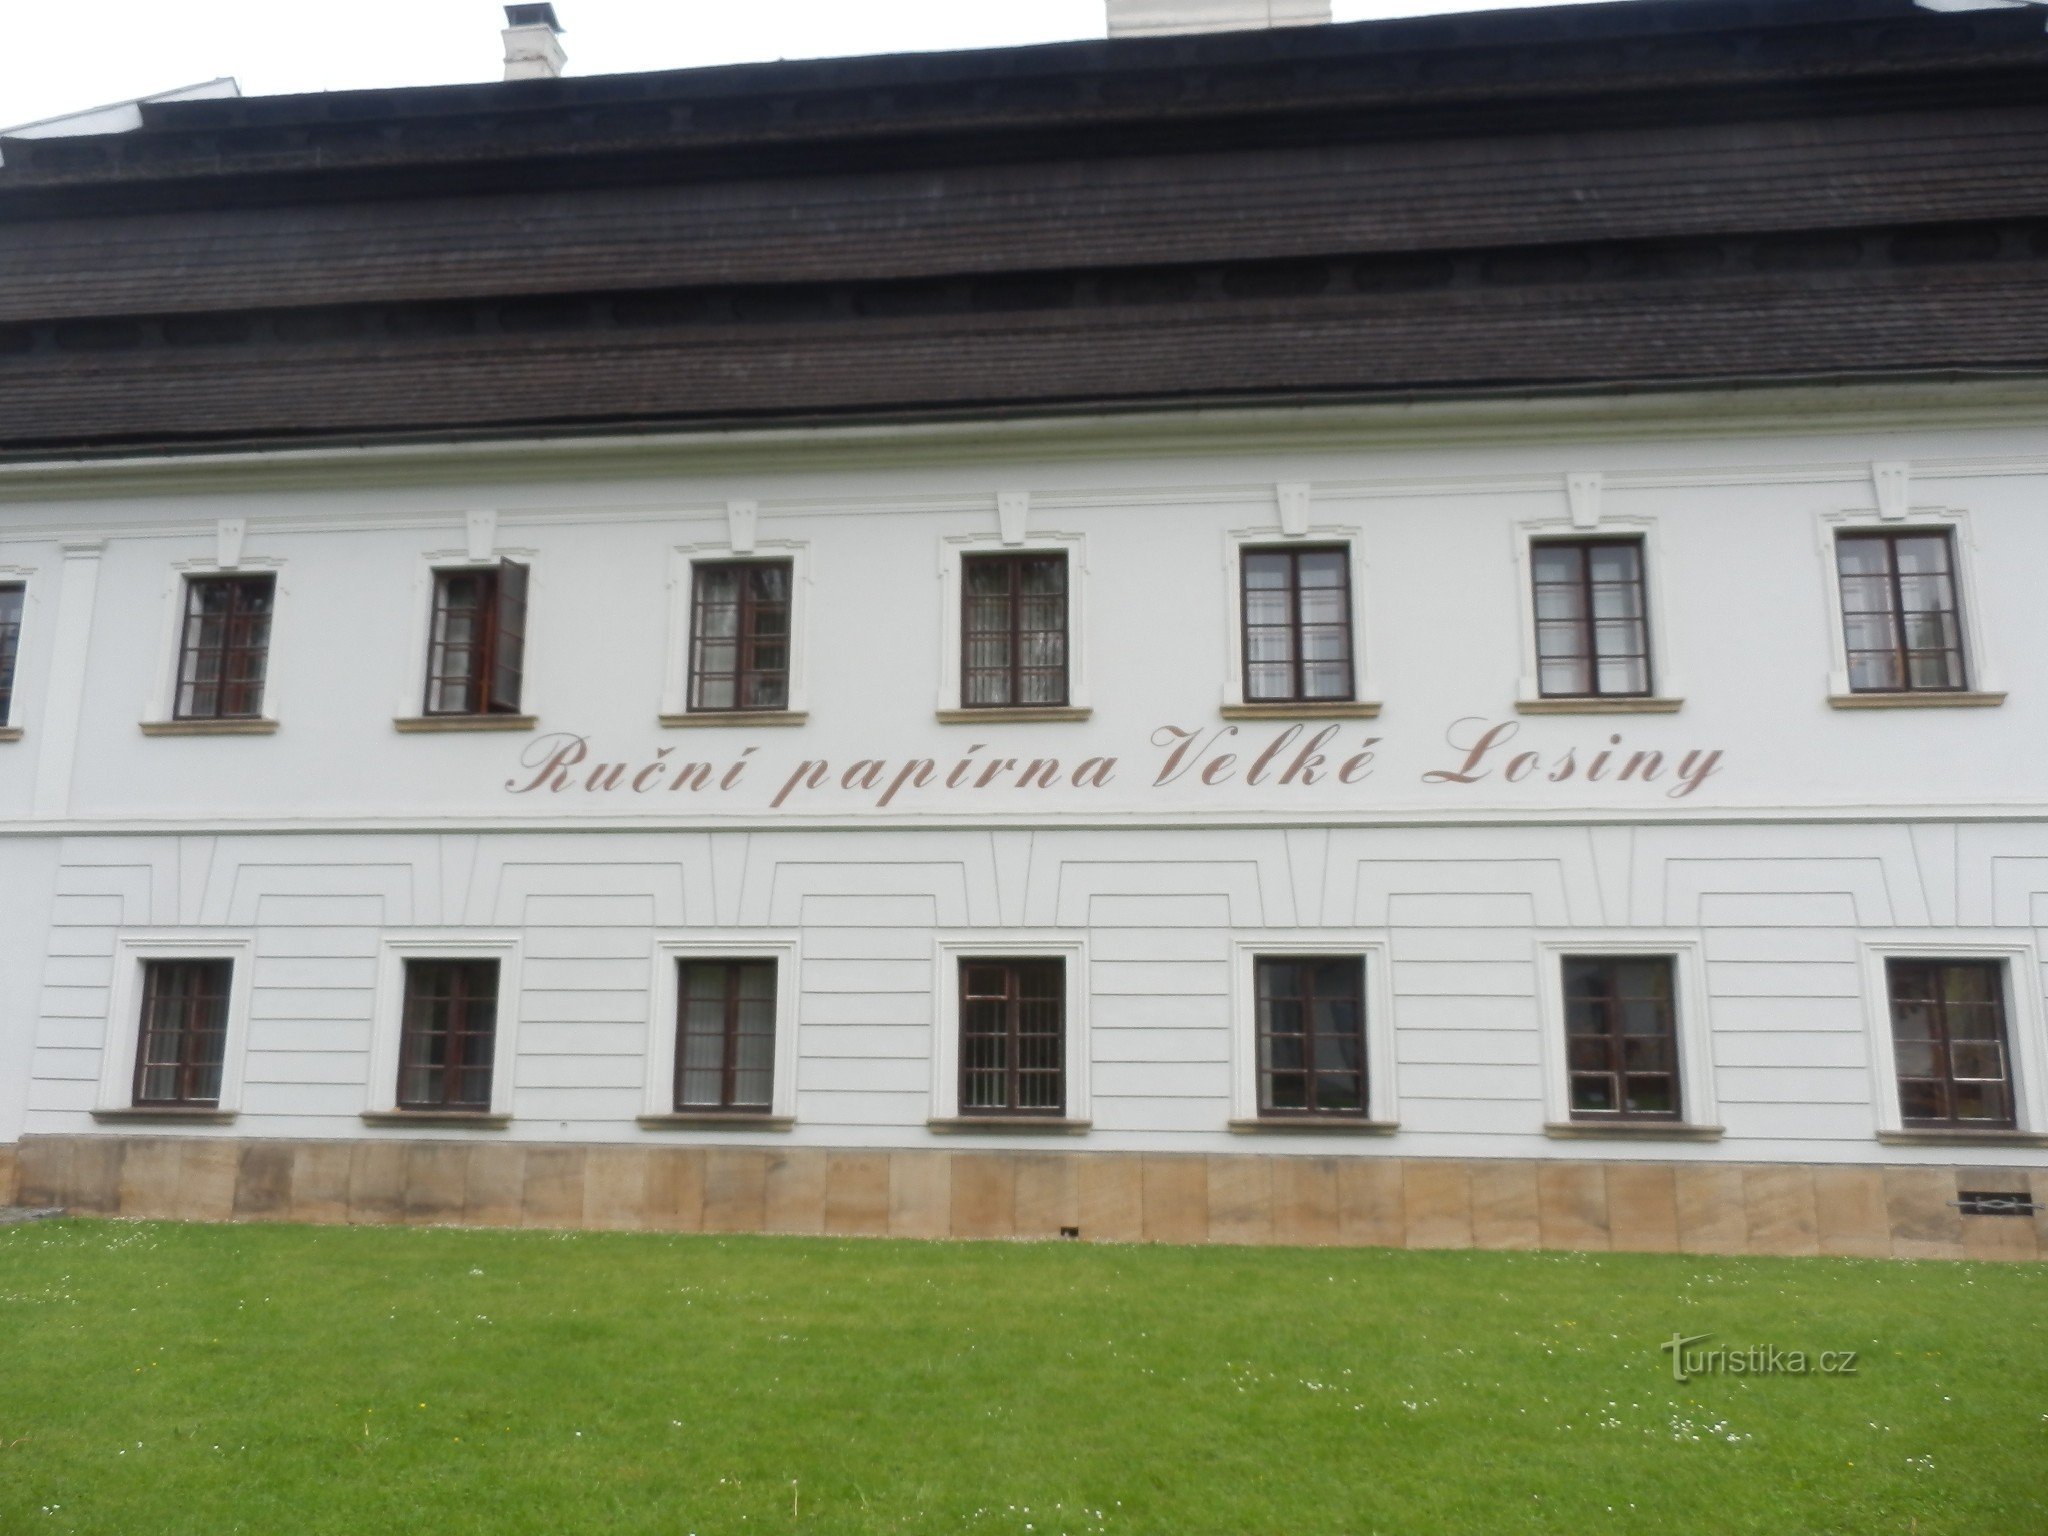 Μουσείο χαρτιού Velké Losiny